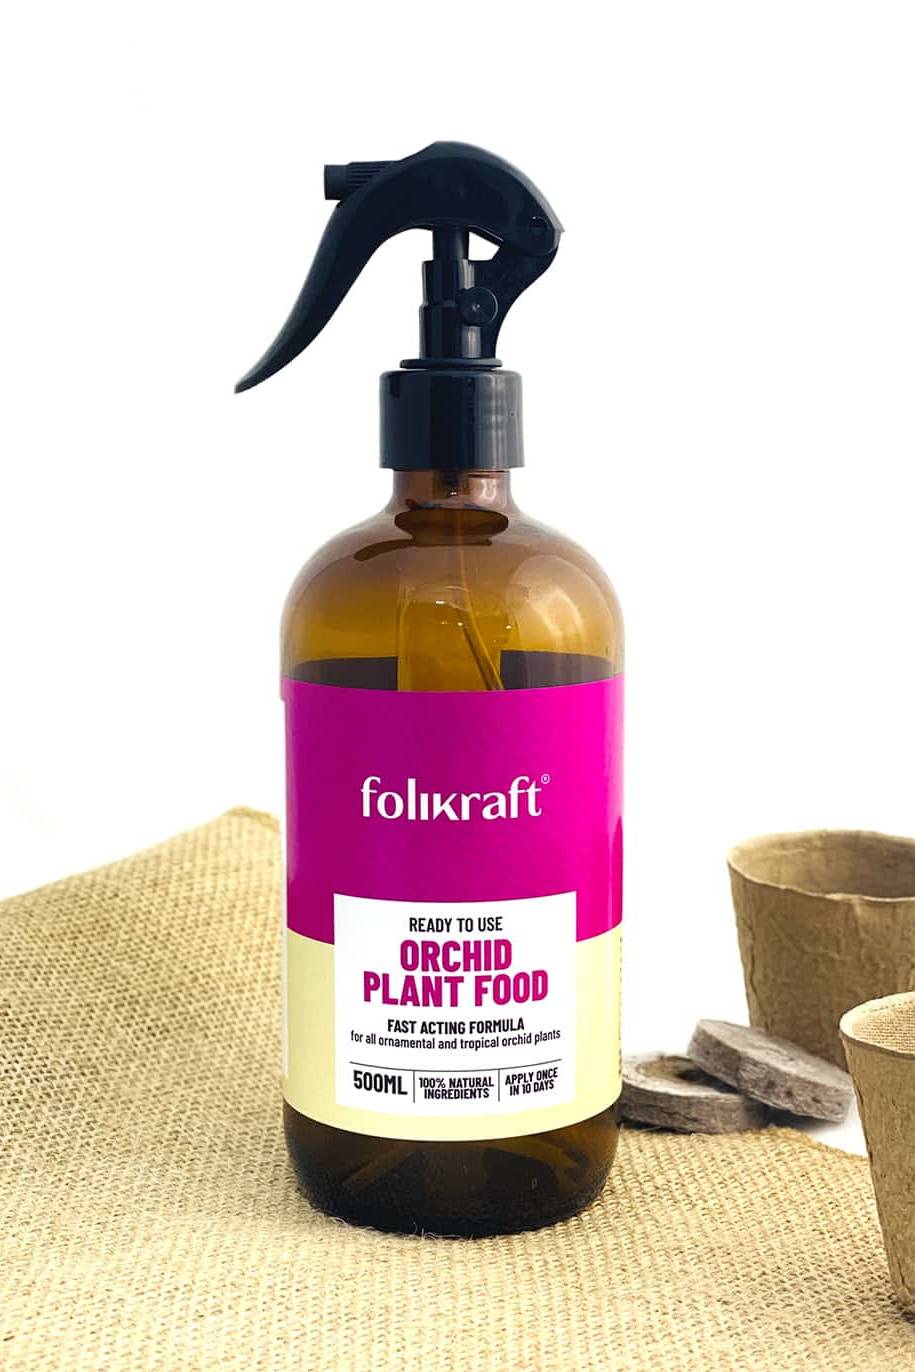 Folikraft Orchid  Food / Fertilizer - 500ml - ready to use